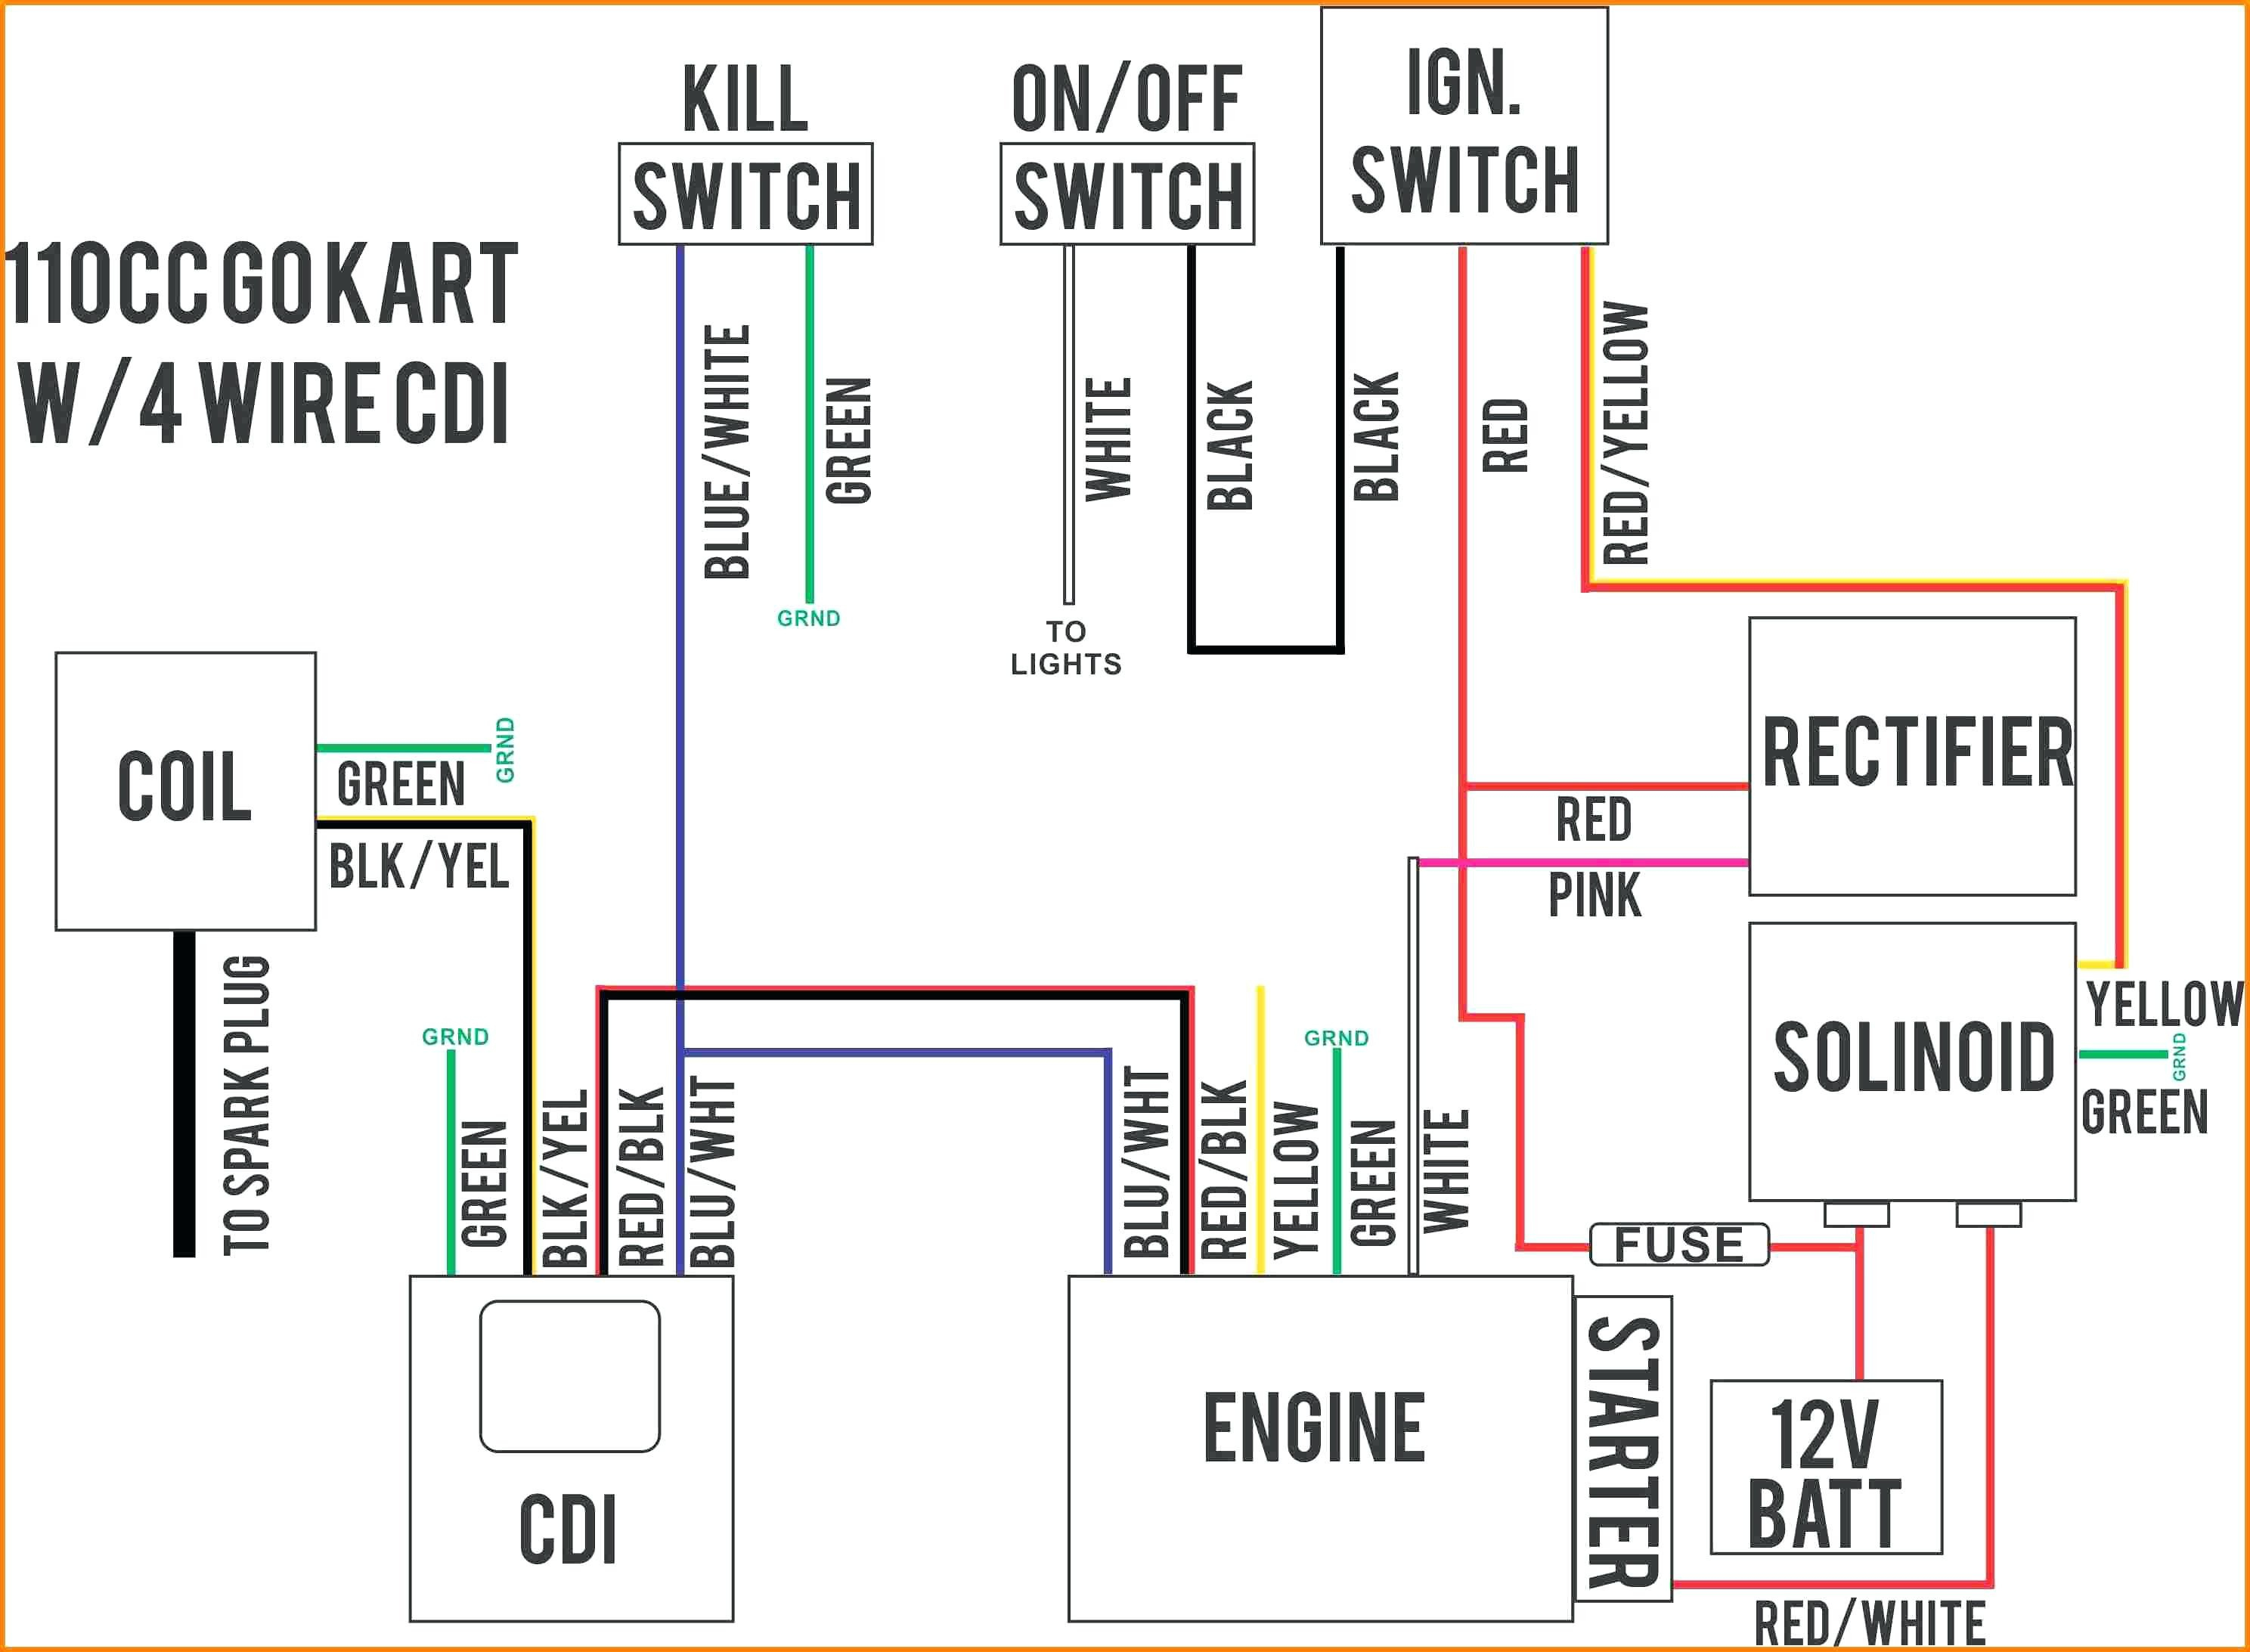 Honda Scoppyi 2015 Wiring Diagram | Wiring Diagram - Honda Motorcycle Wiring Diagram